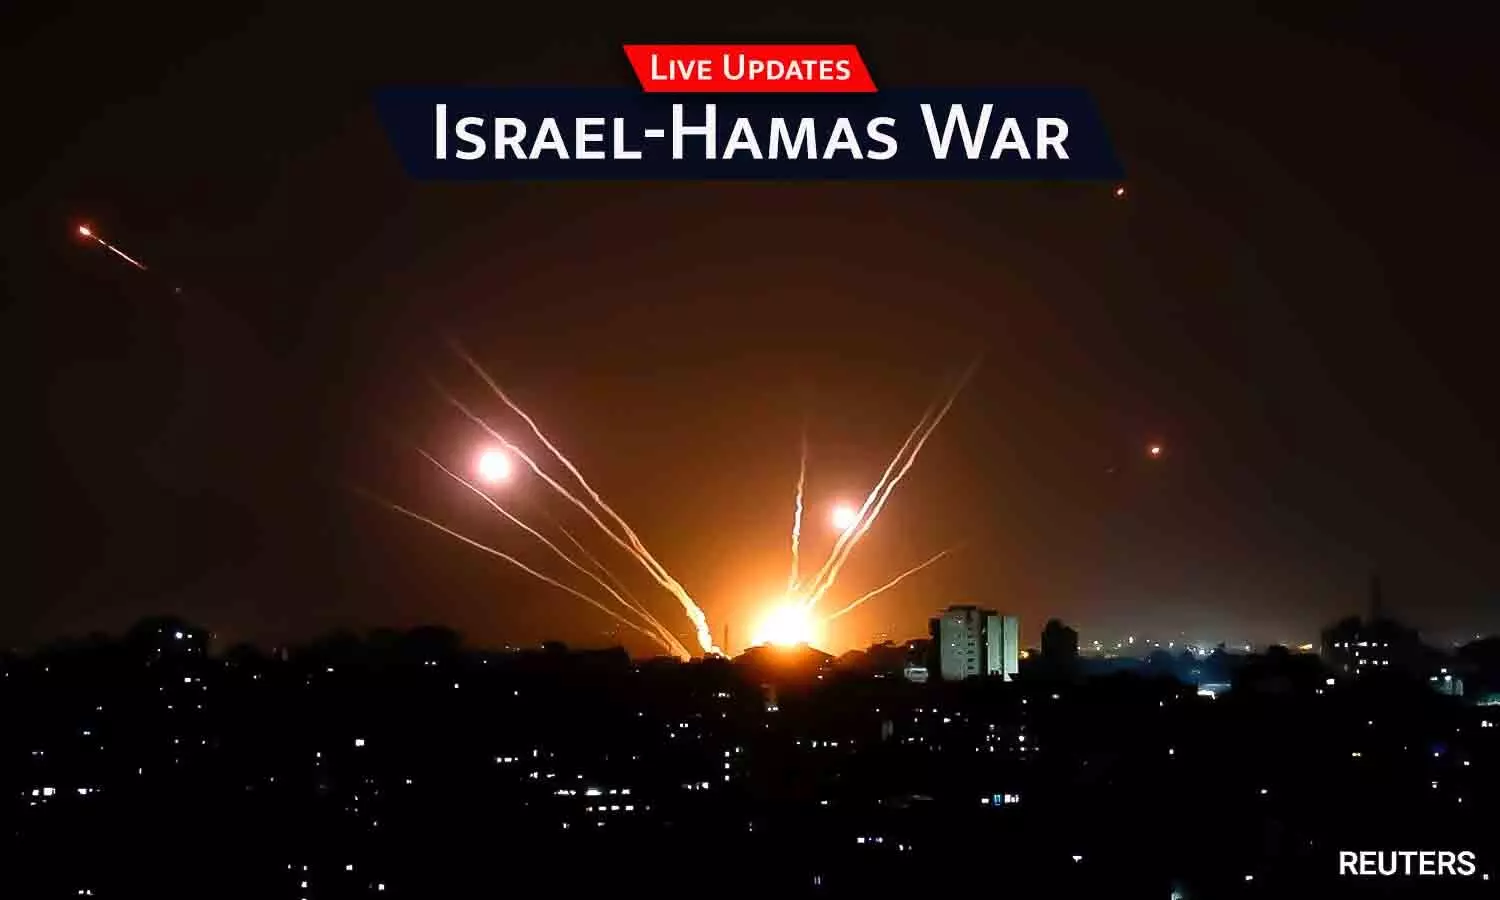 Israel-Hamas War Live Updates: हमास-लेबनान की ओर से इजराइल पर फिर हमले, 15 रॉकेट दागे गए; नेतन्याहू ने पीएम मोदी से बात की